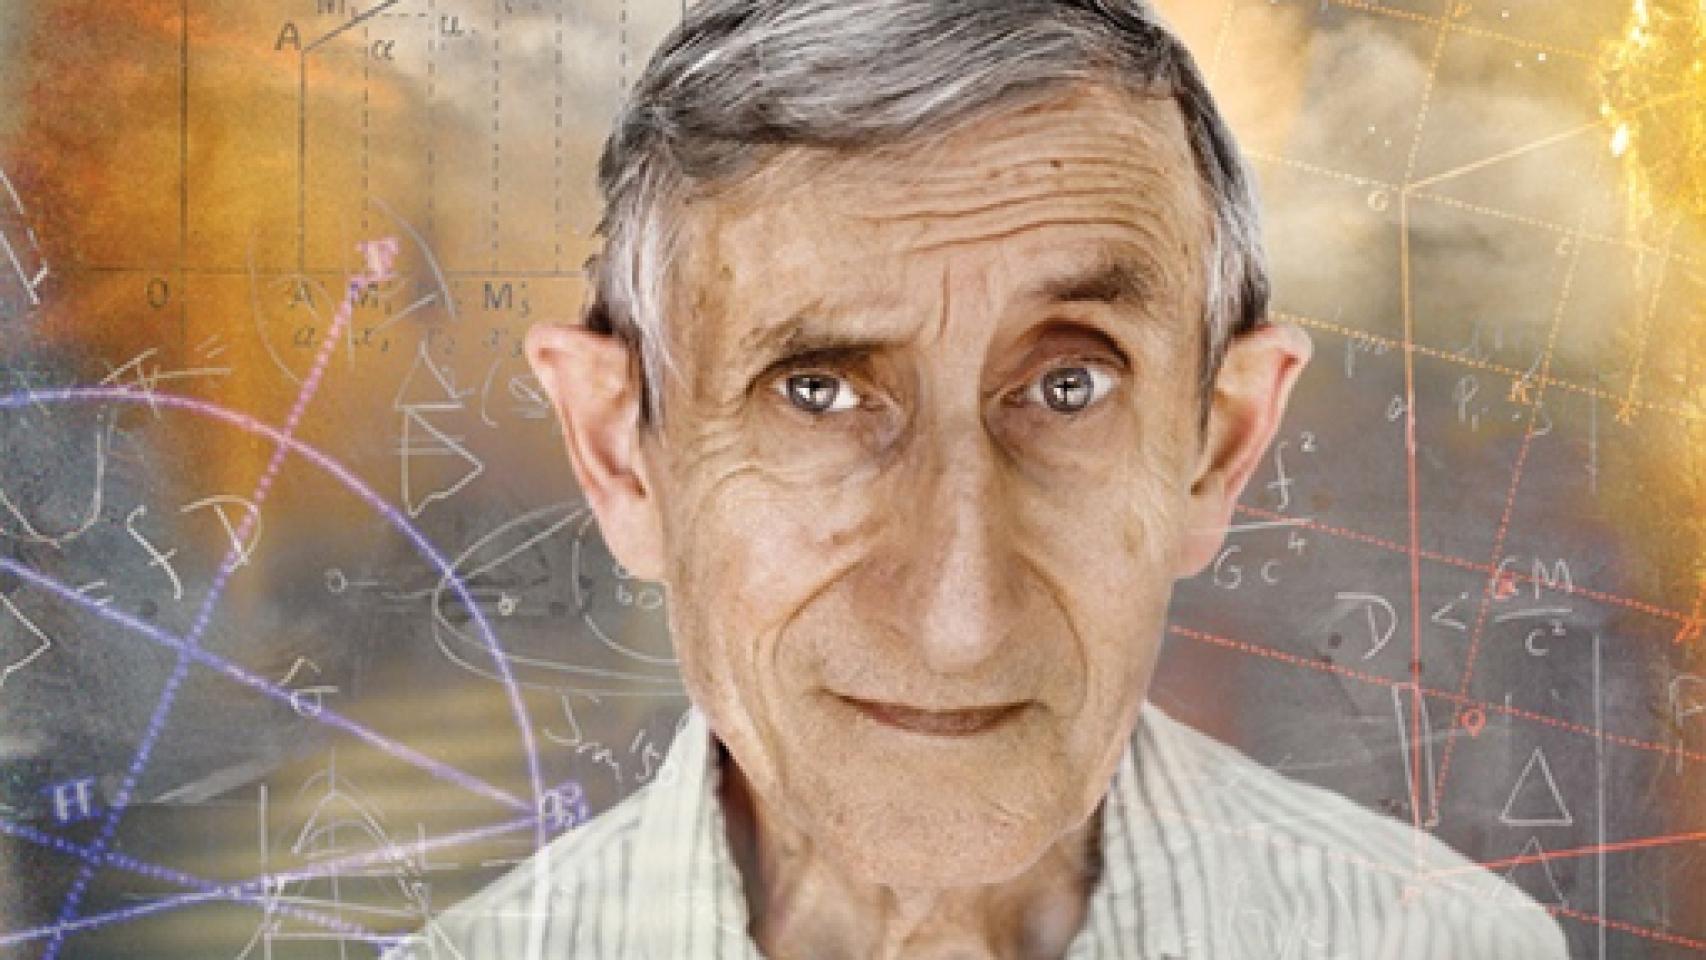 Image: Freeman Dyson, científico y ensayista